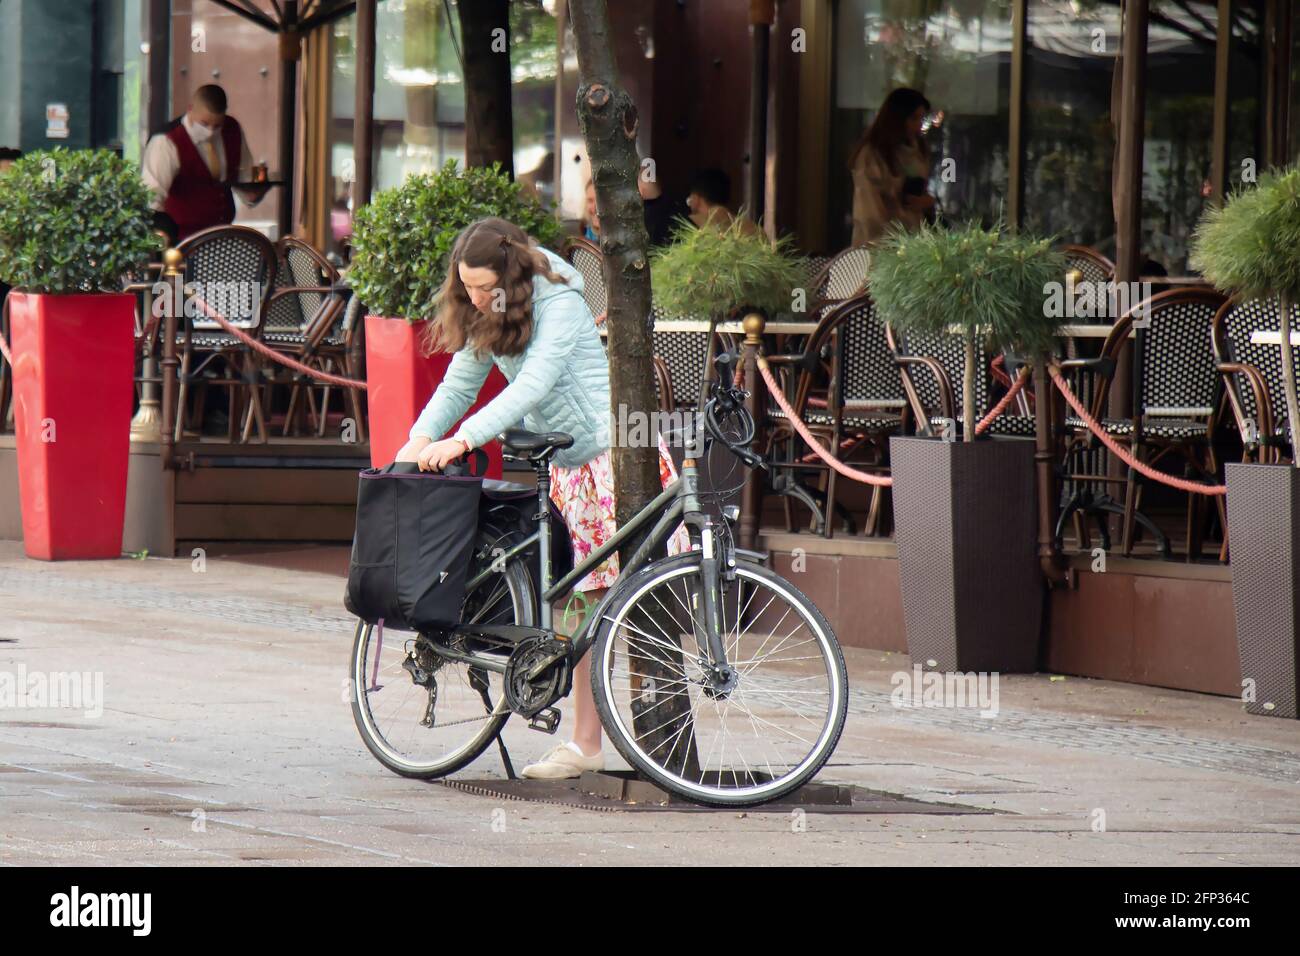 Belgrad, Serbien - 13. Mai 2021: Eine junge Frau packte doppelte Fahrradtaschen auf ihrem geparkten Fahrrad auf einer Straße in der Nähe der Cafeterrasse Stockfoto